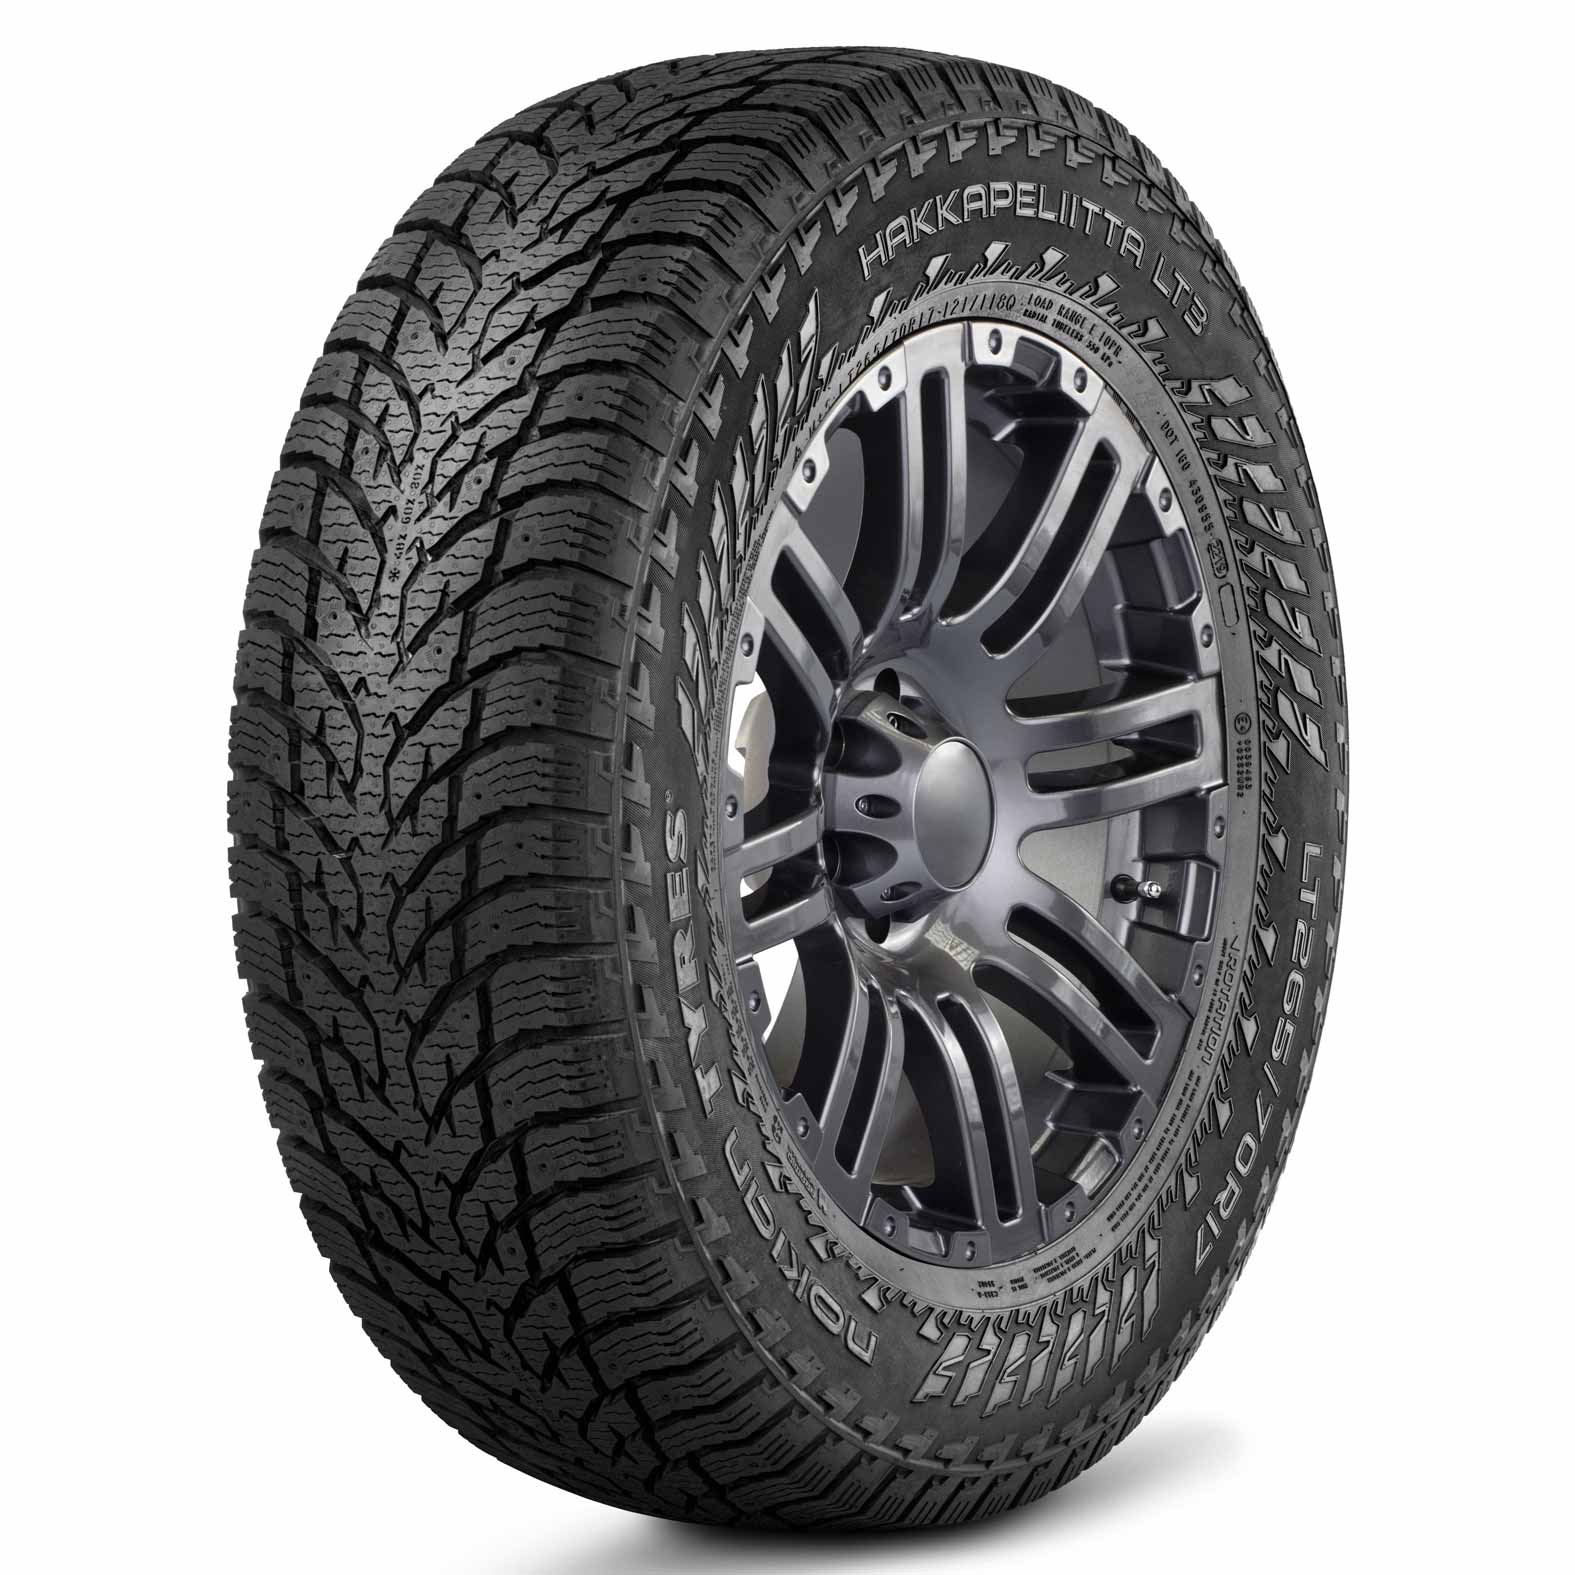 Nokian Hakkapeliitta LT3 Tires for Winter | Kal Tire